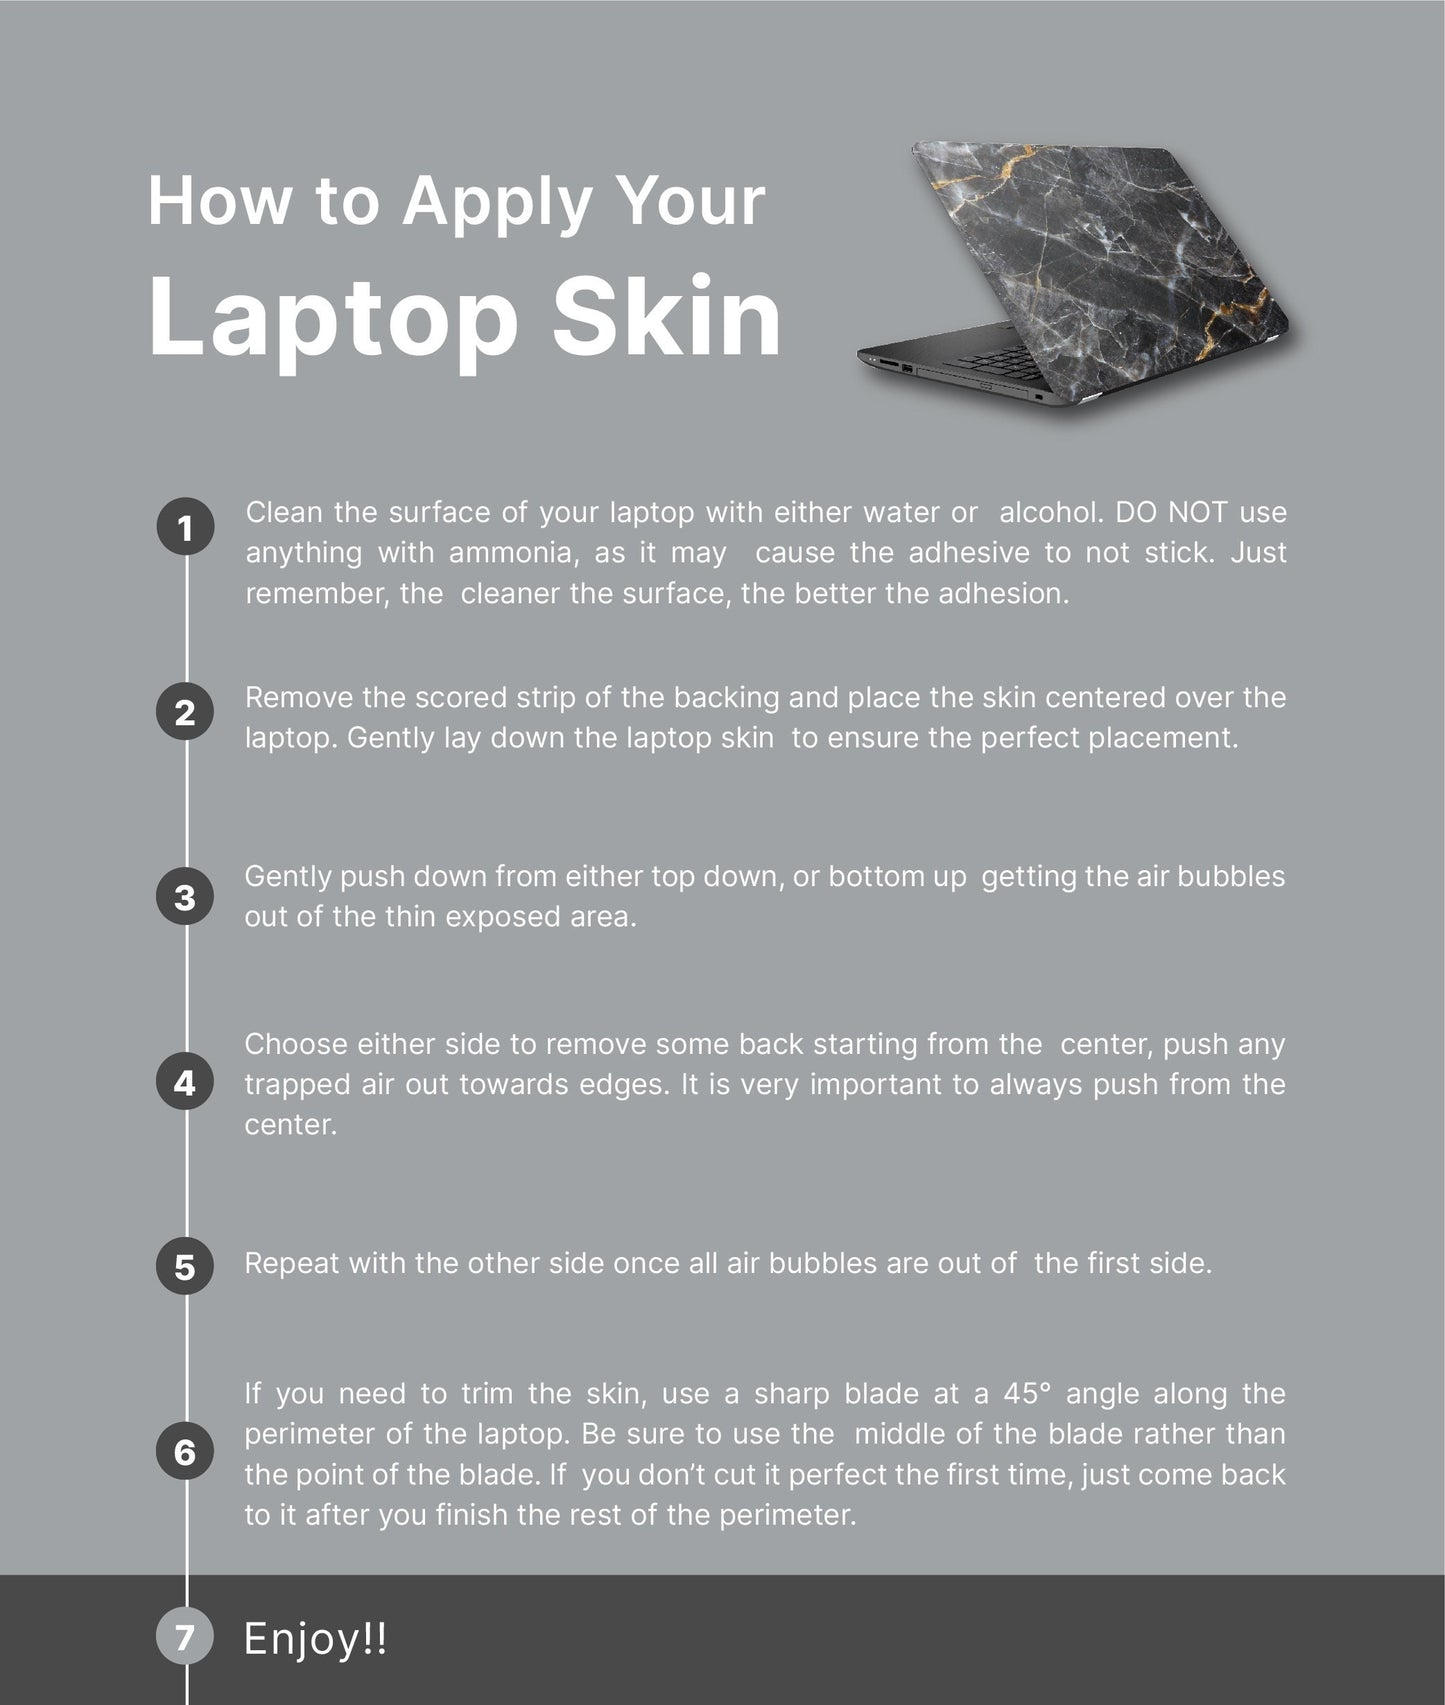 Constellations Laptop Skin, Laptop Cover, Laptop Skins, Removable Laptop Skins, Laptop Decal, Customized Laptop Skin, Laptop Stickers 189